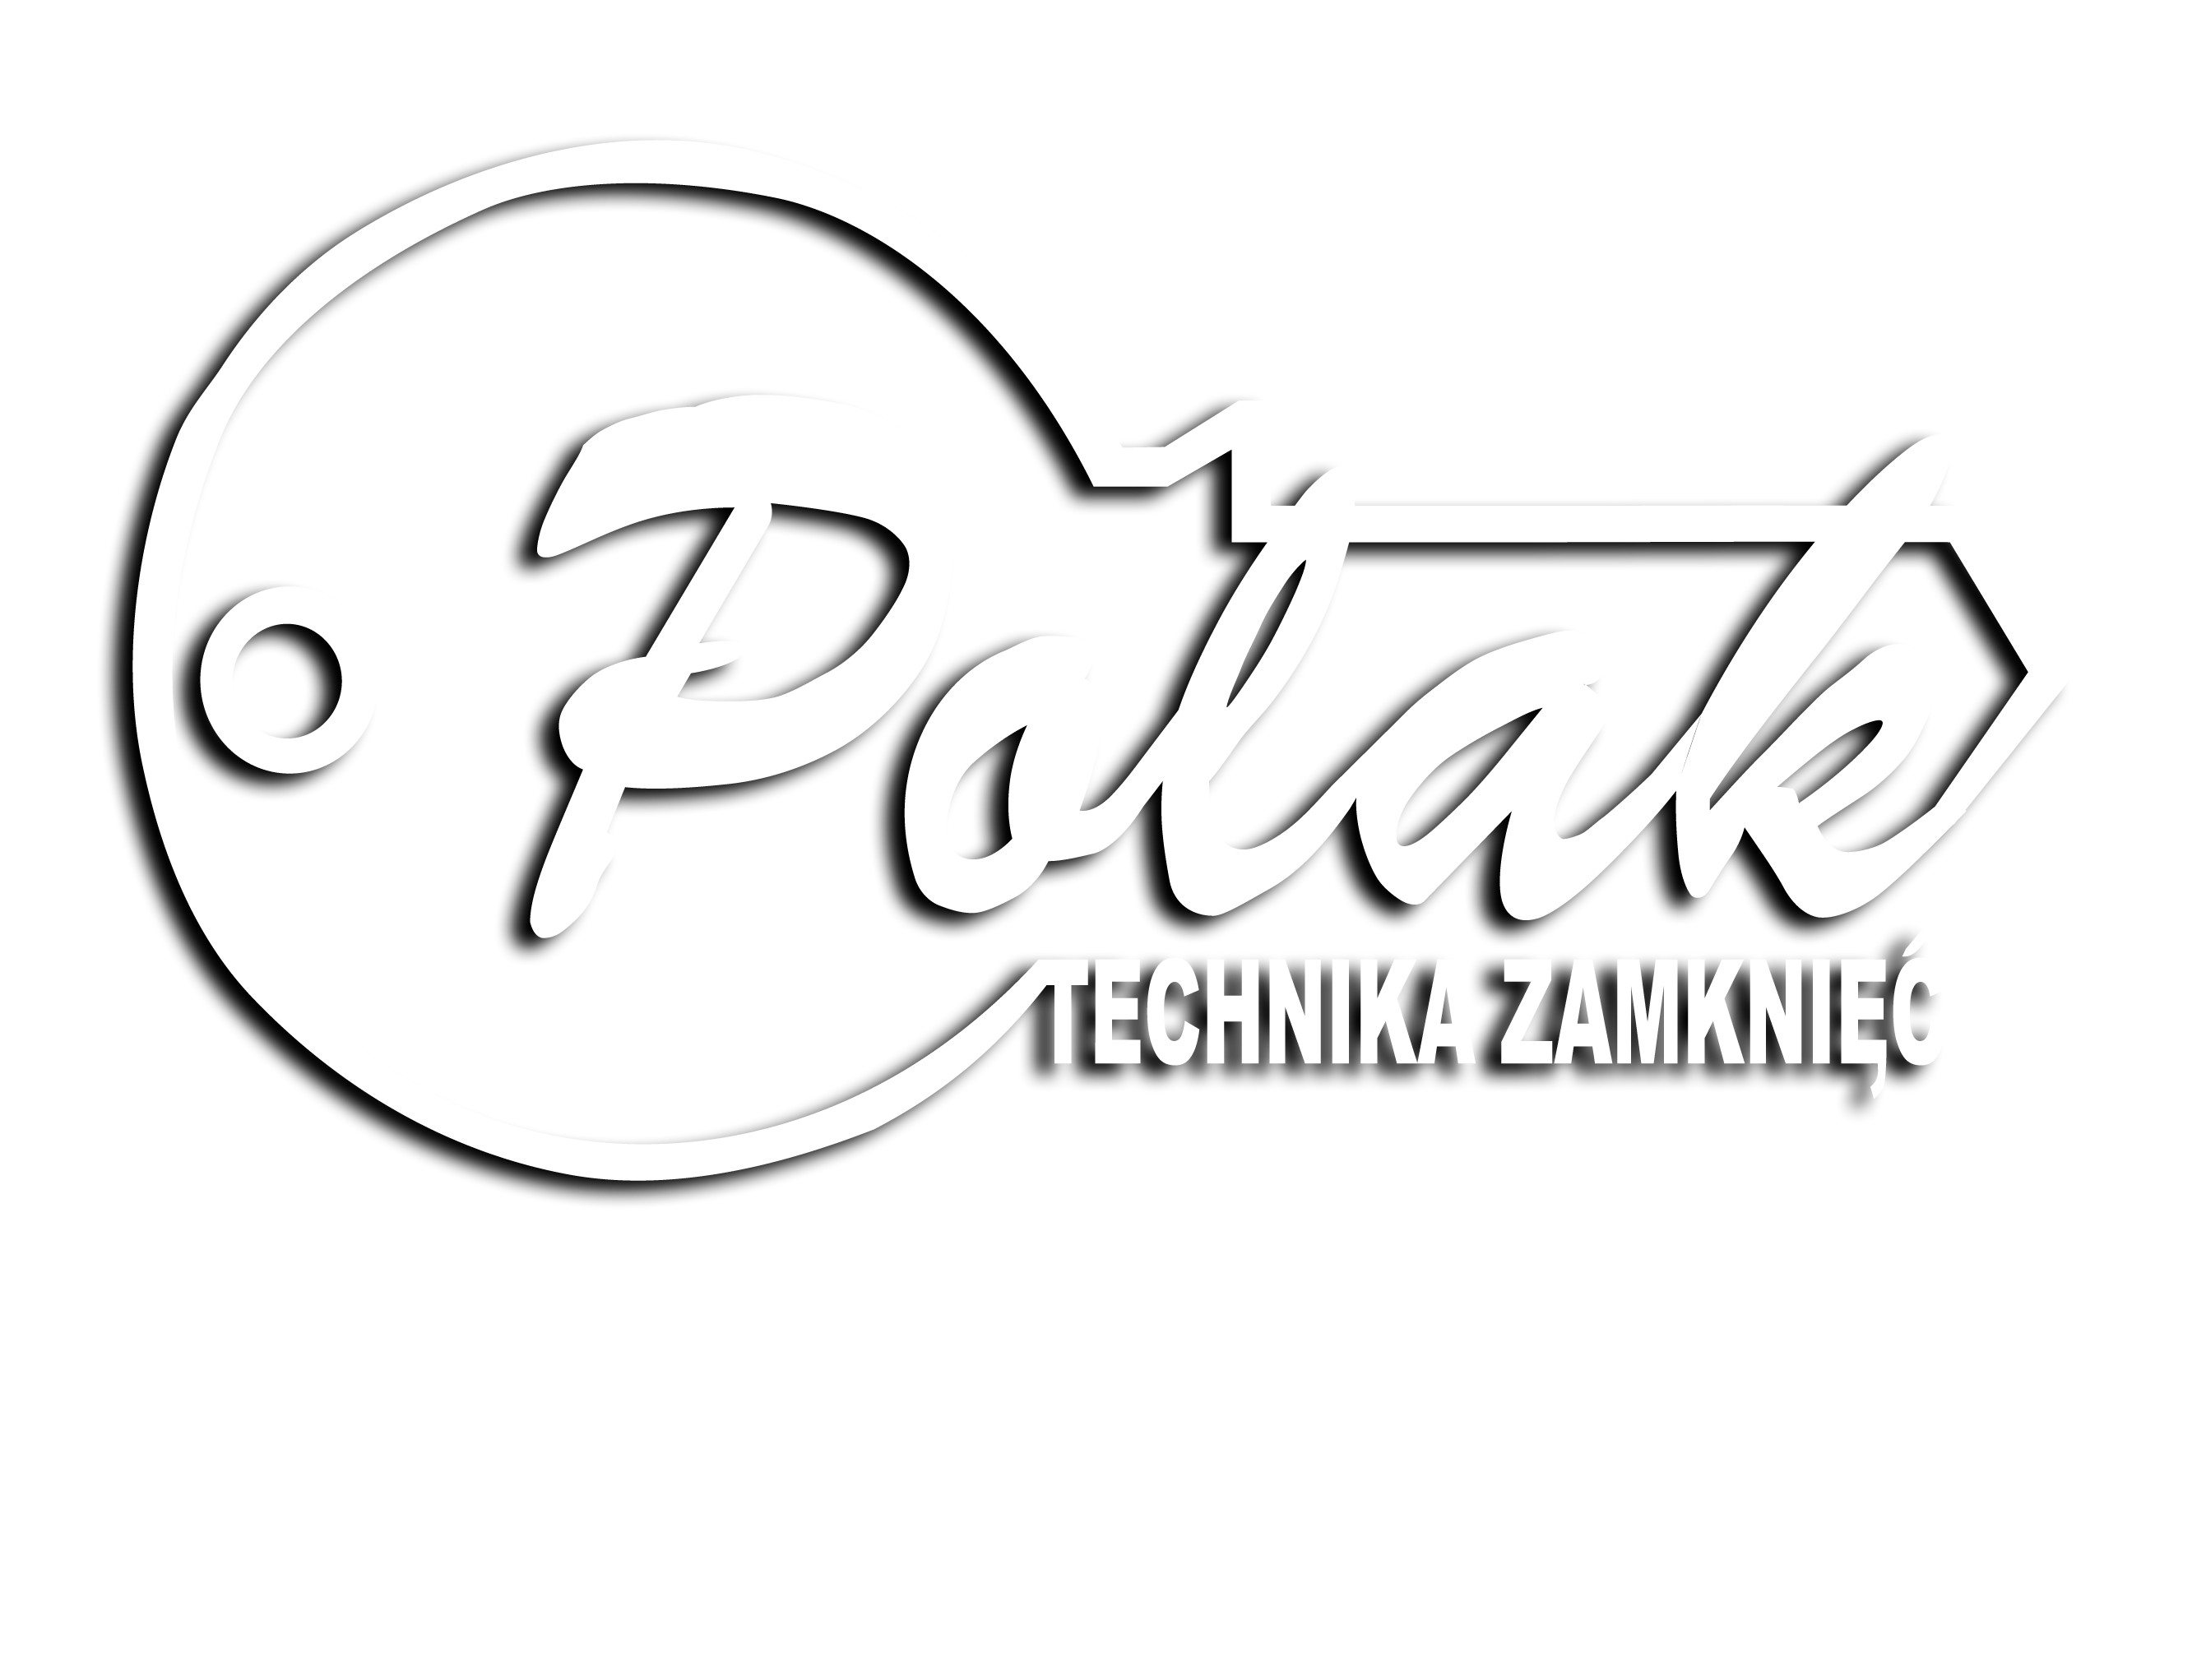 Technika Zamknięć Lech Polak